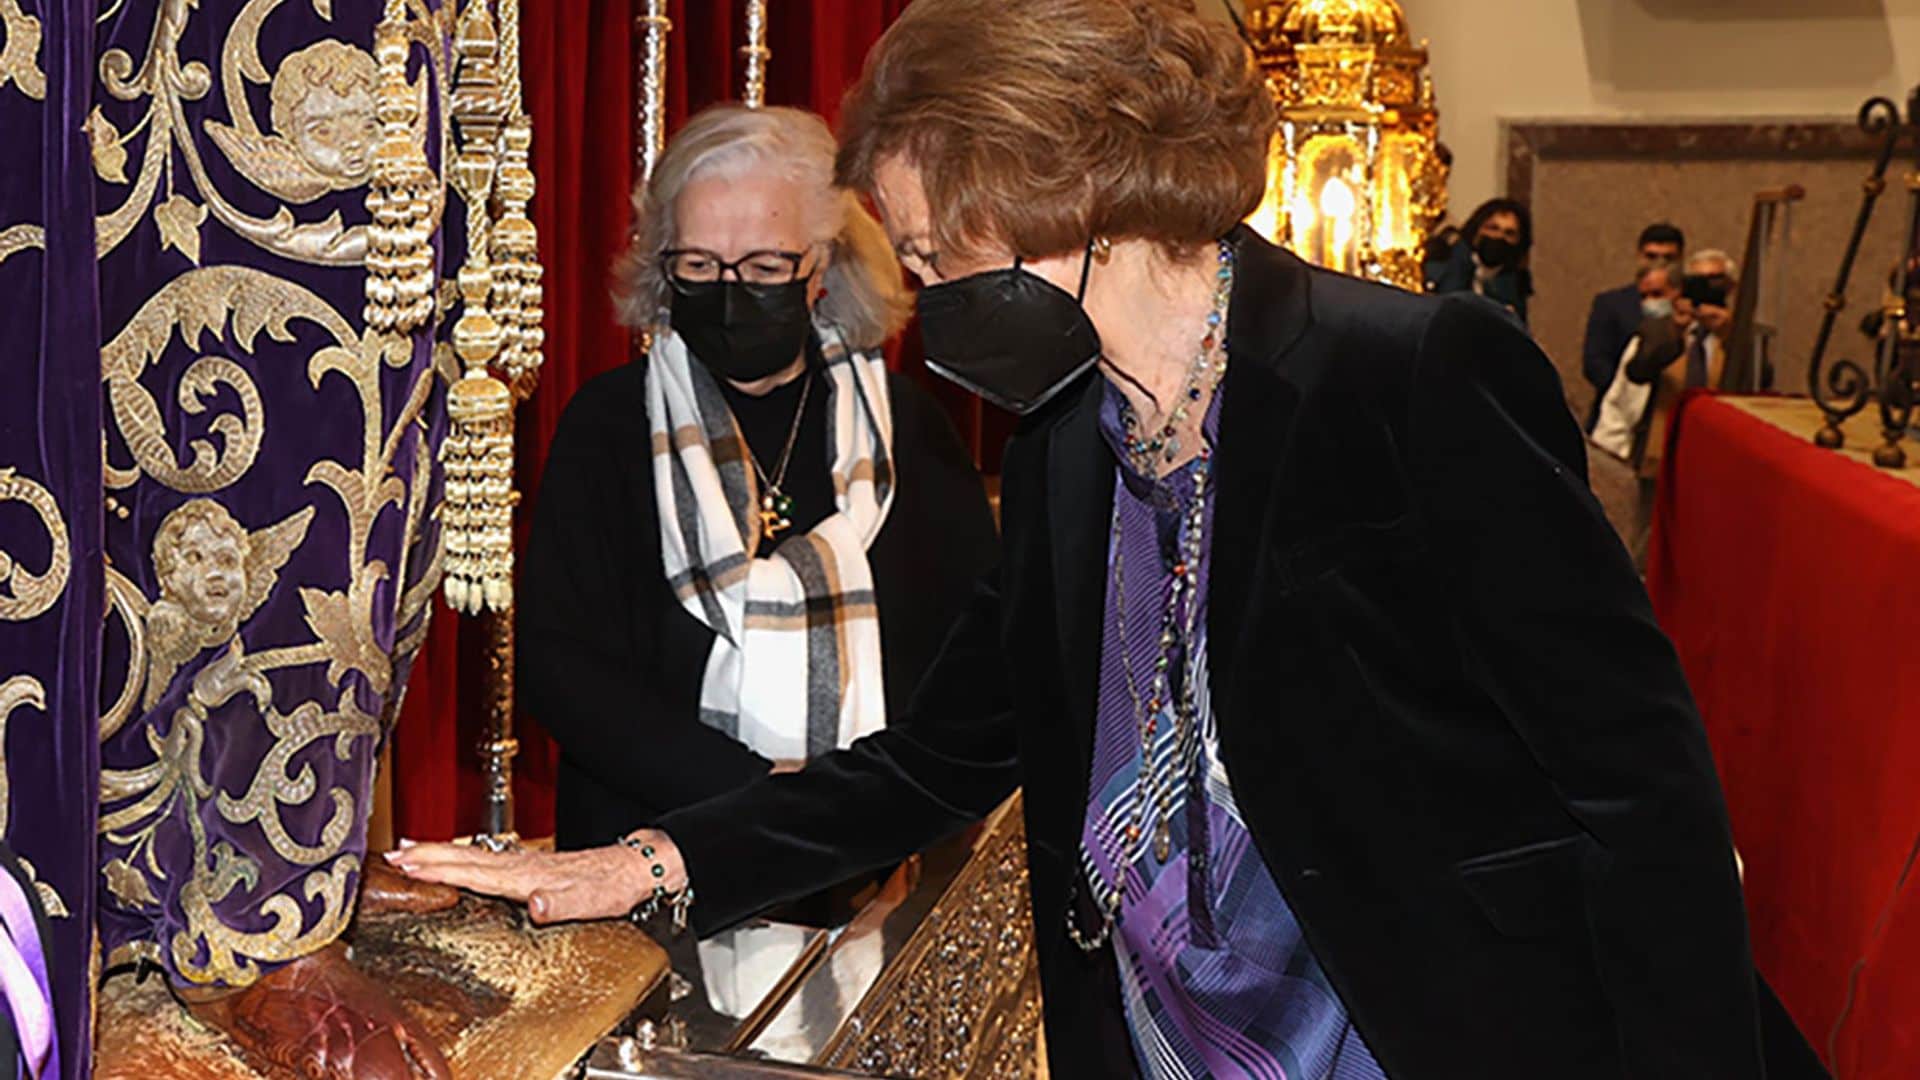 La reina Sofía, aclamada en su visita al Cristo de Medinaceli en Madrid